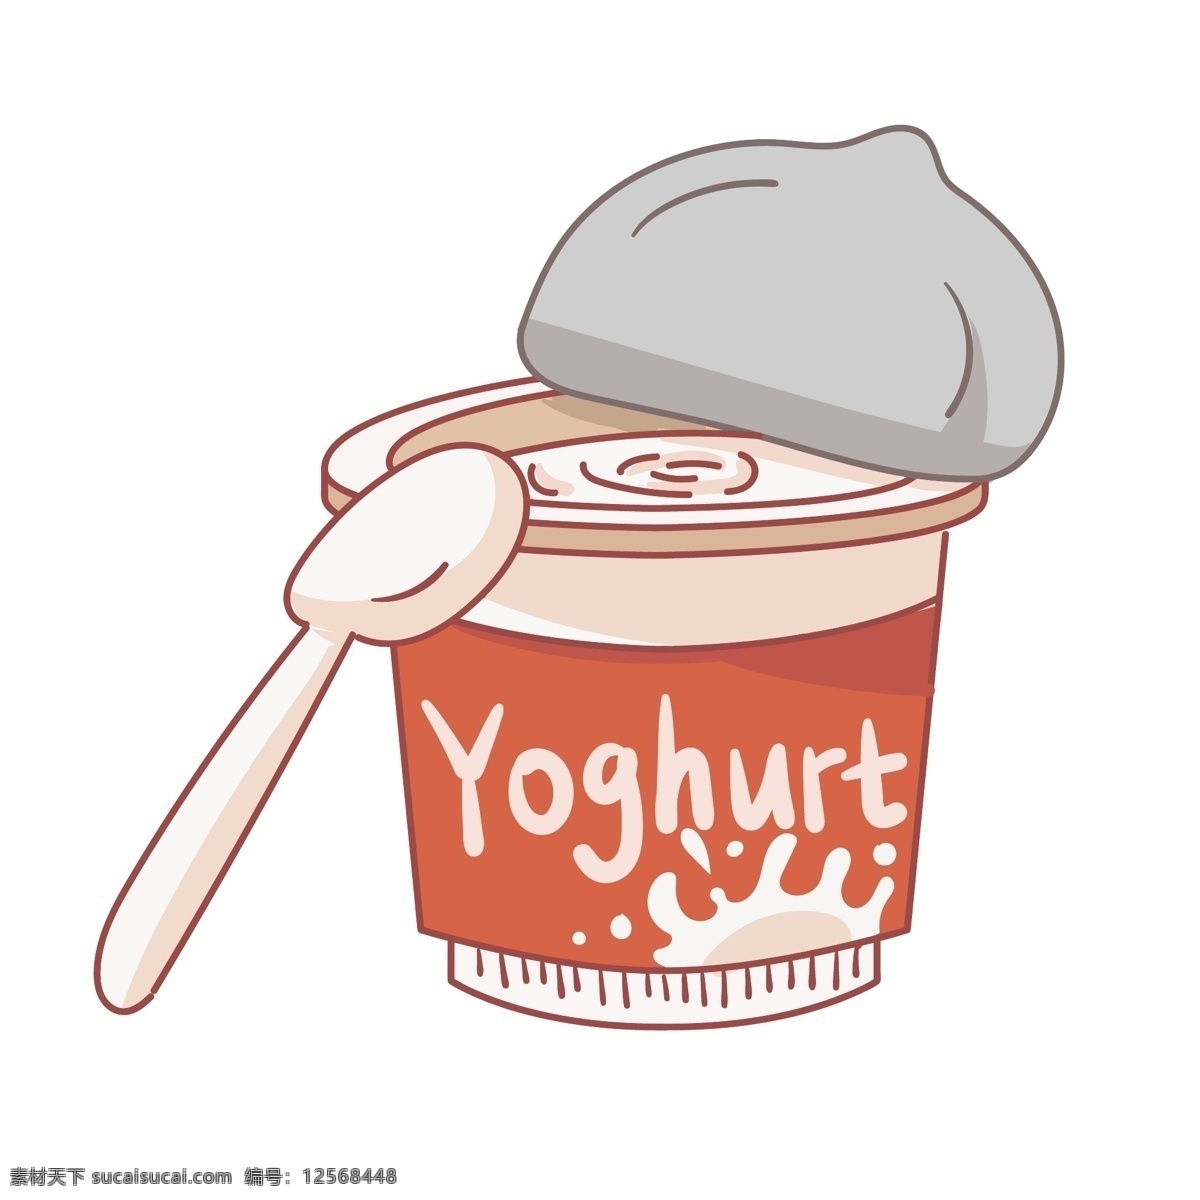 卡通酸奶 手绘酸奶 矢量酸奶 酸奶素材 杯装酸奶 卡通勺子